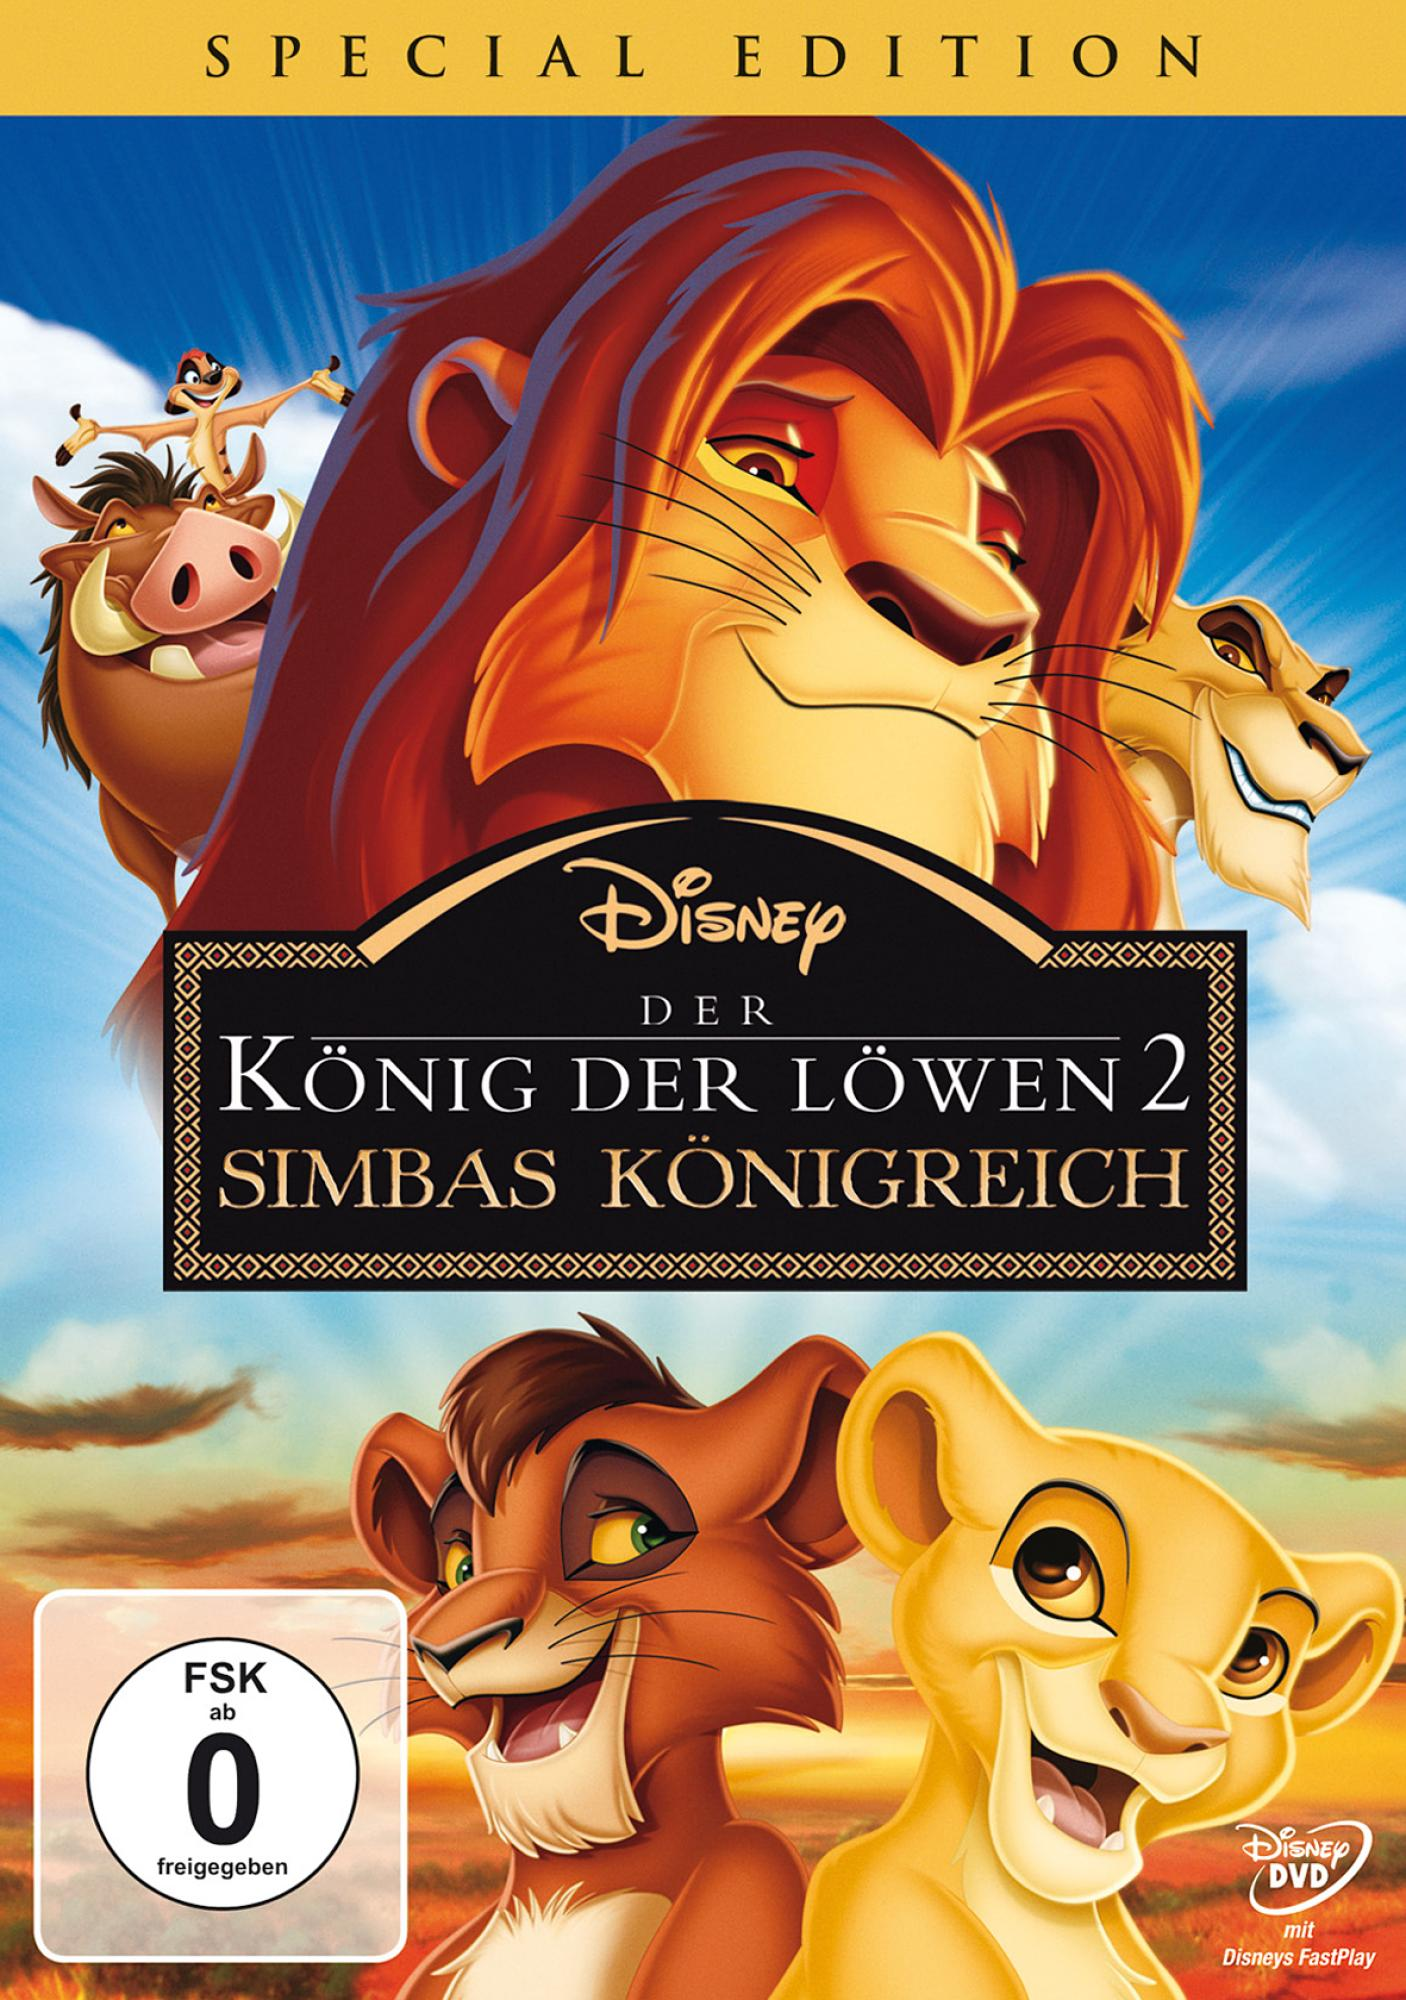 Der Simbas Edition 2: Special König Königreich Löwen DVD - der